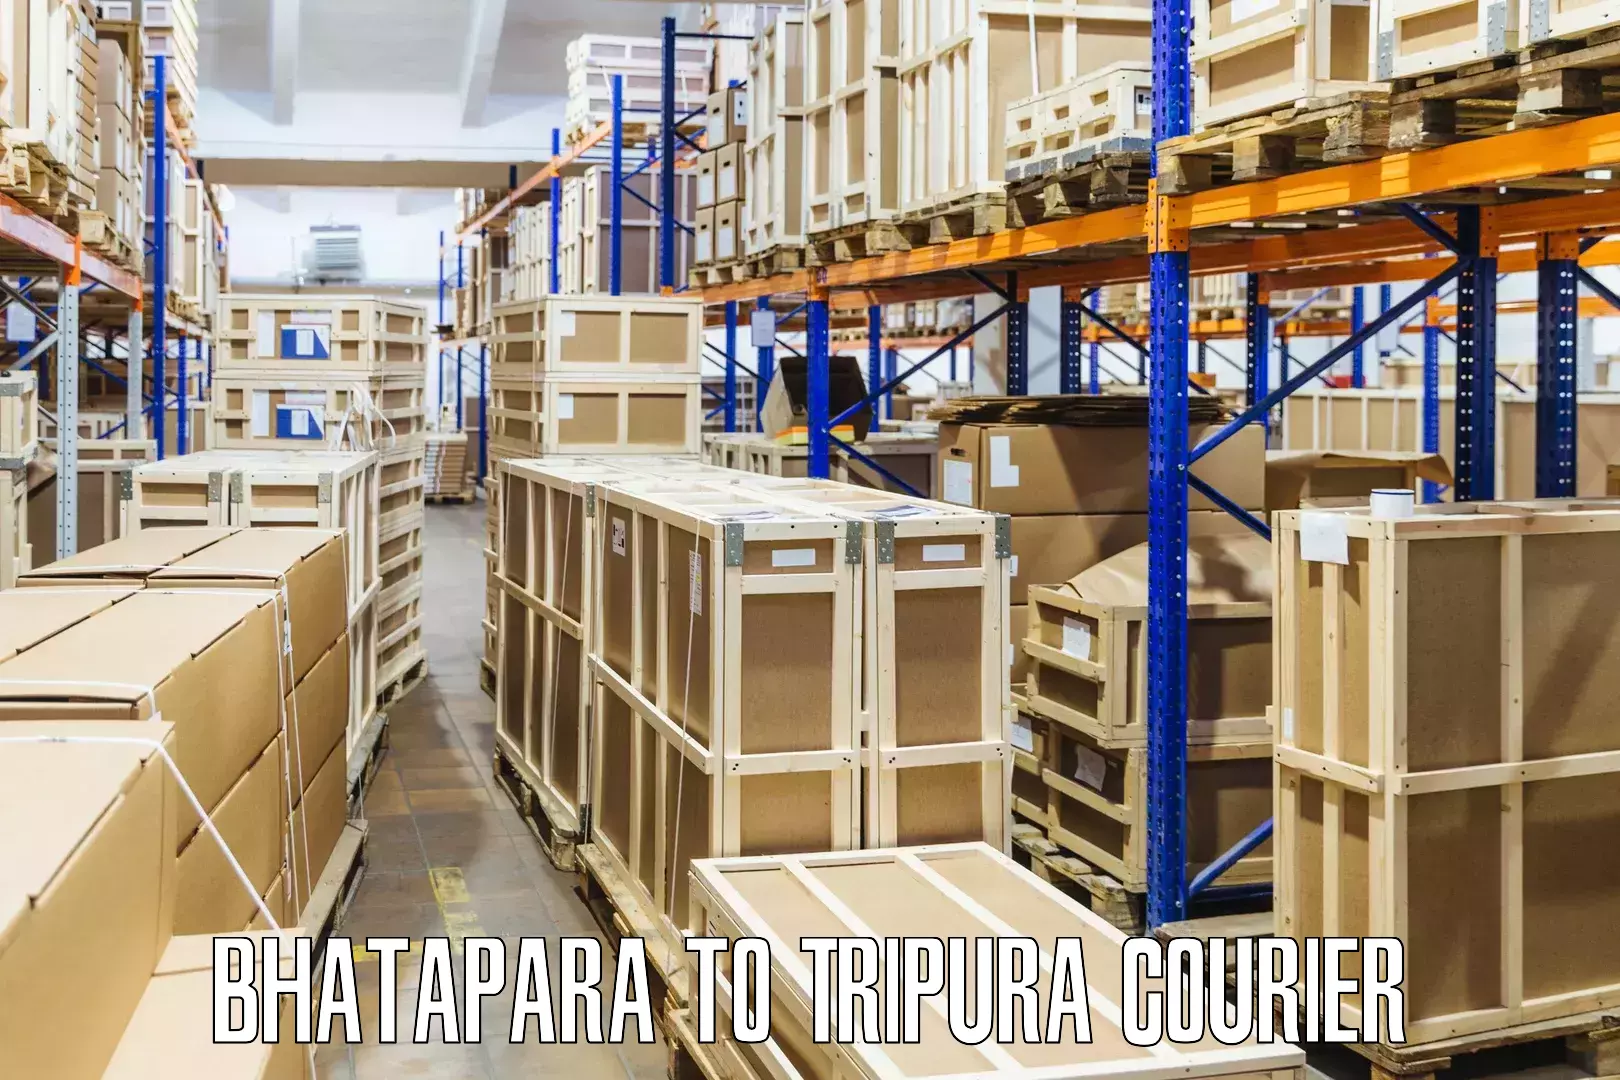 Innovative courier solutions Bhatapara to Manu Bazar